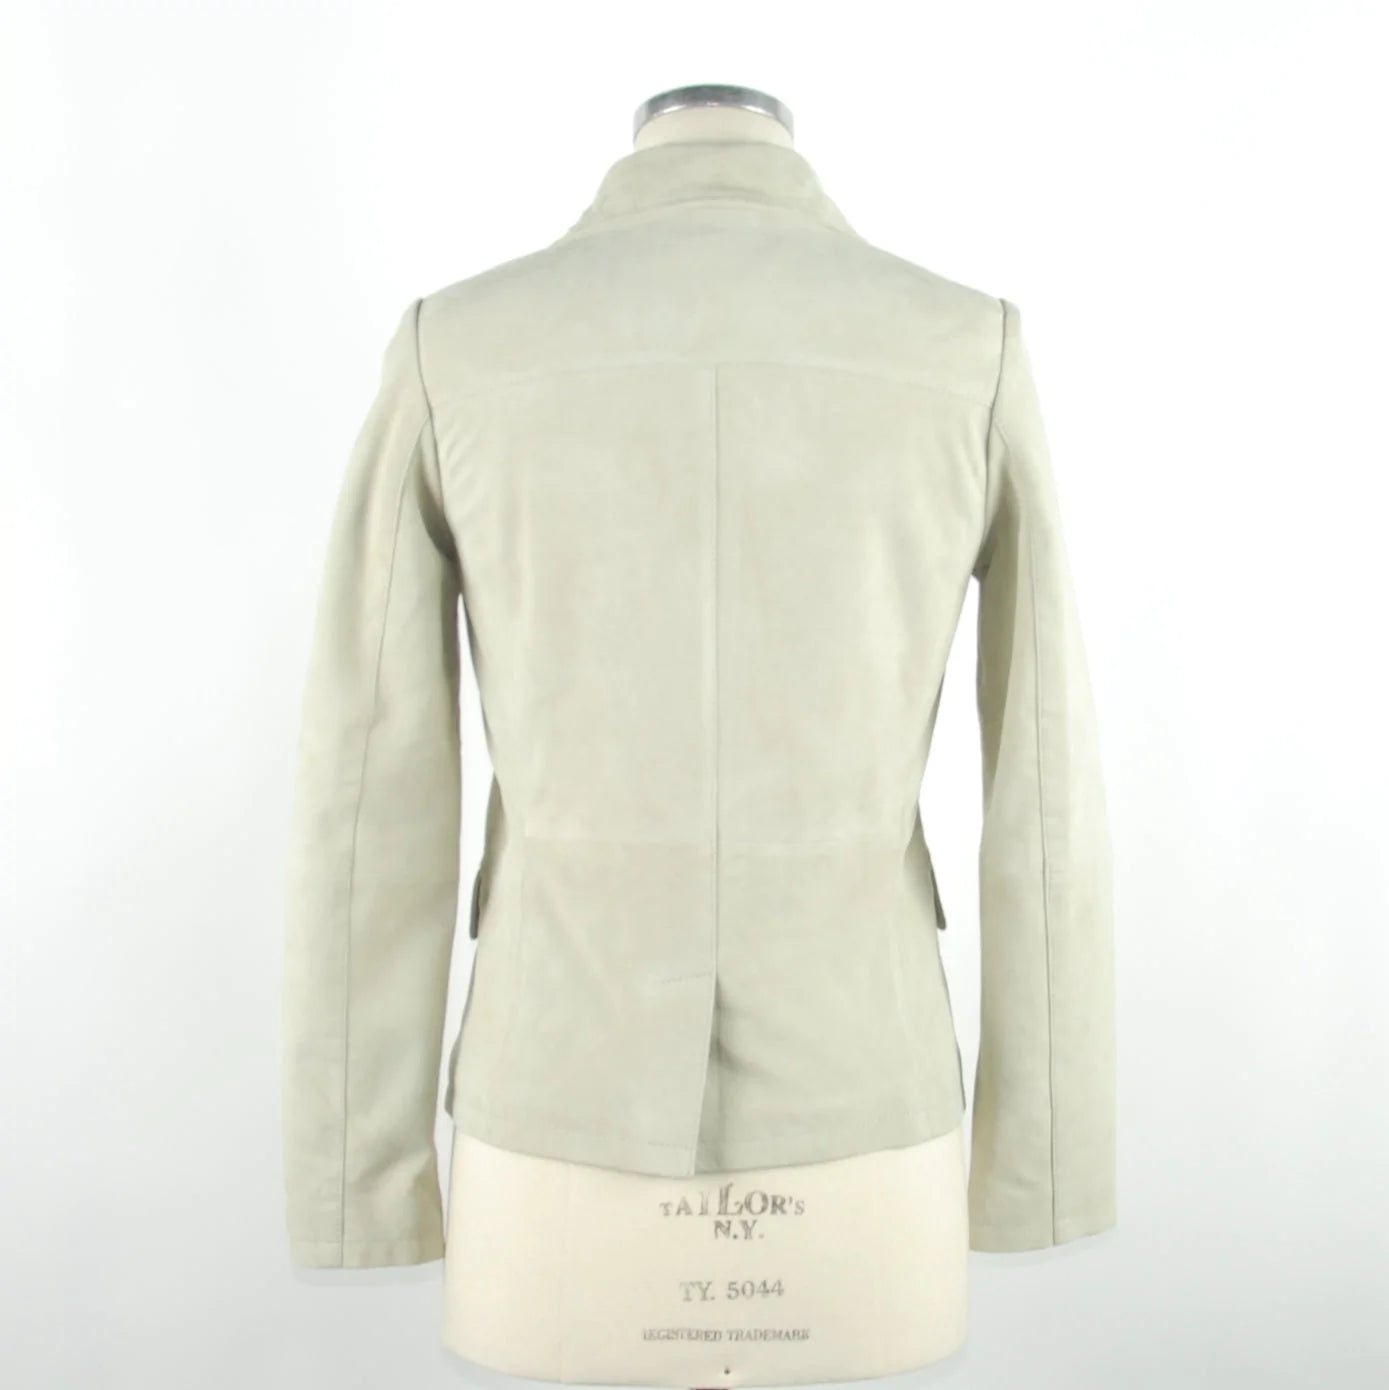 Emilio Roelli White Genuine Leather Jackets & Coat Emilio Romanelli, feed-1, IT40|S, IT42|M, IT44|L, IT46 | L, IT48 | XL, Jackets & Coats - Women - Clothing, White at SEYMAYKA